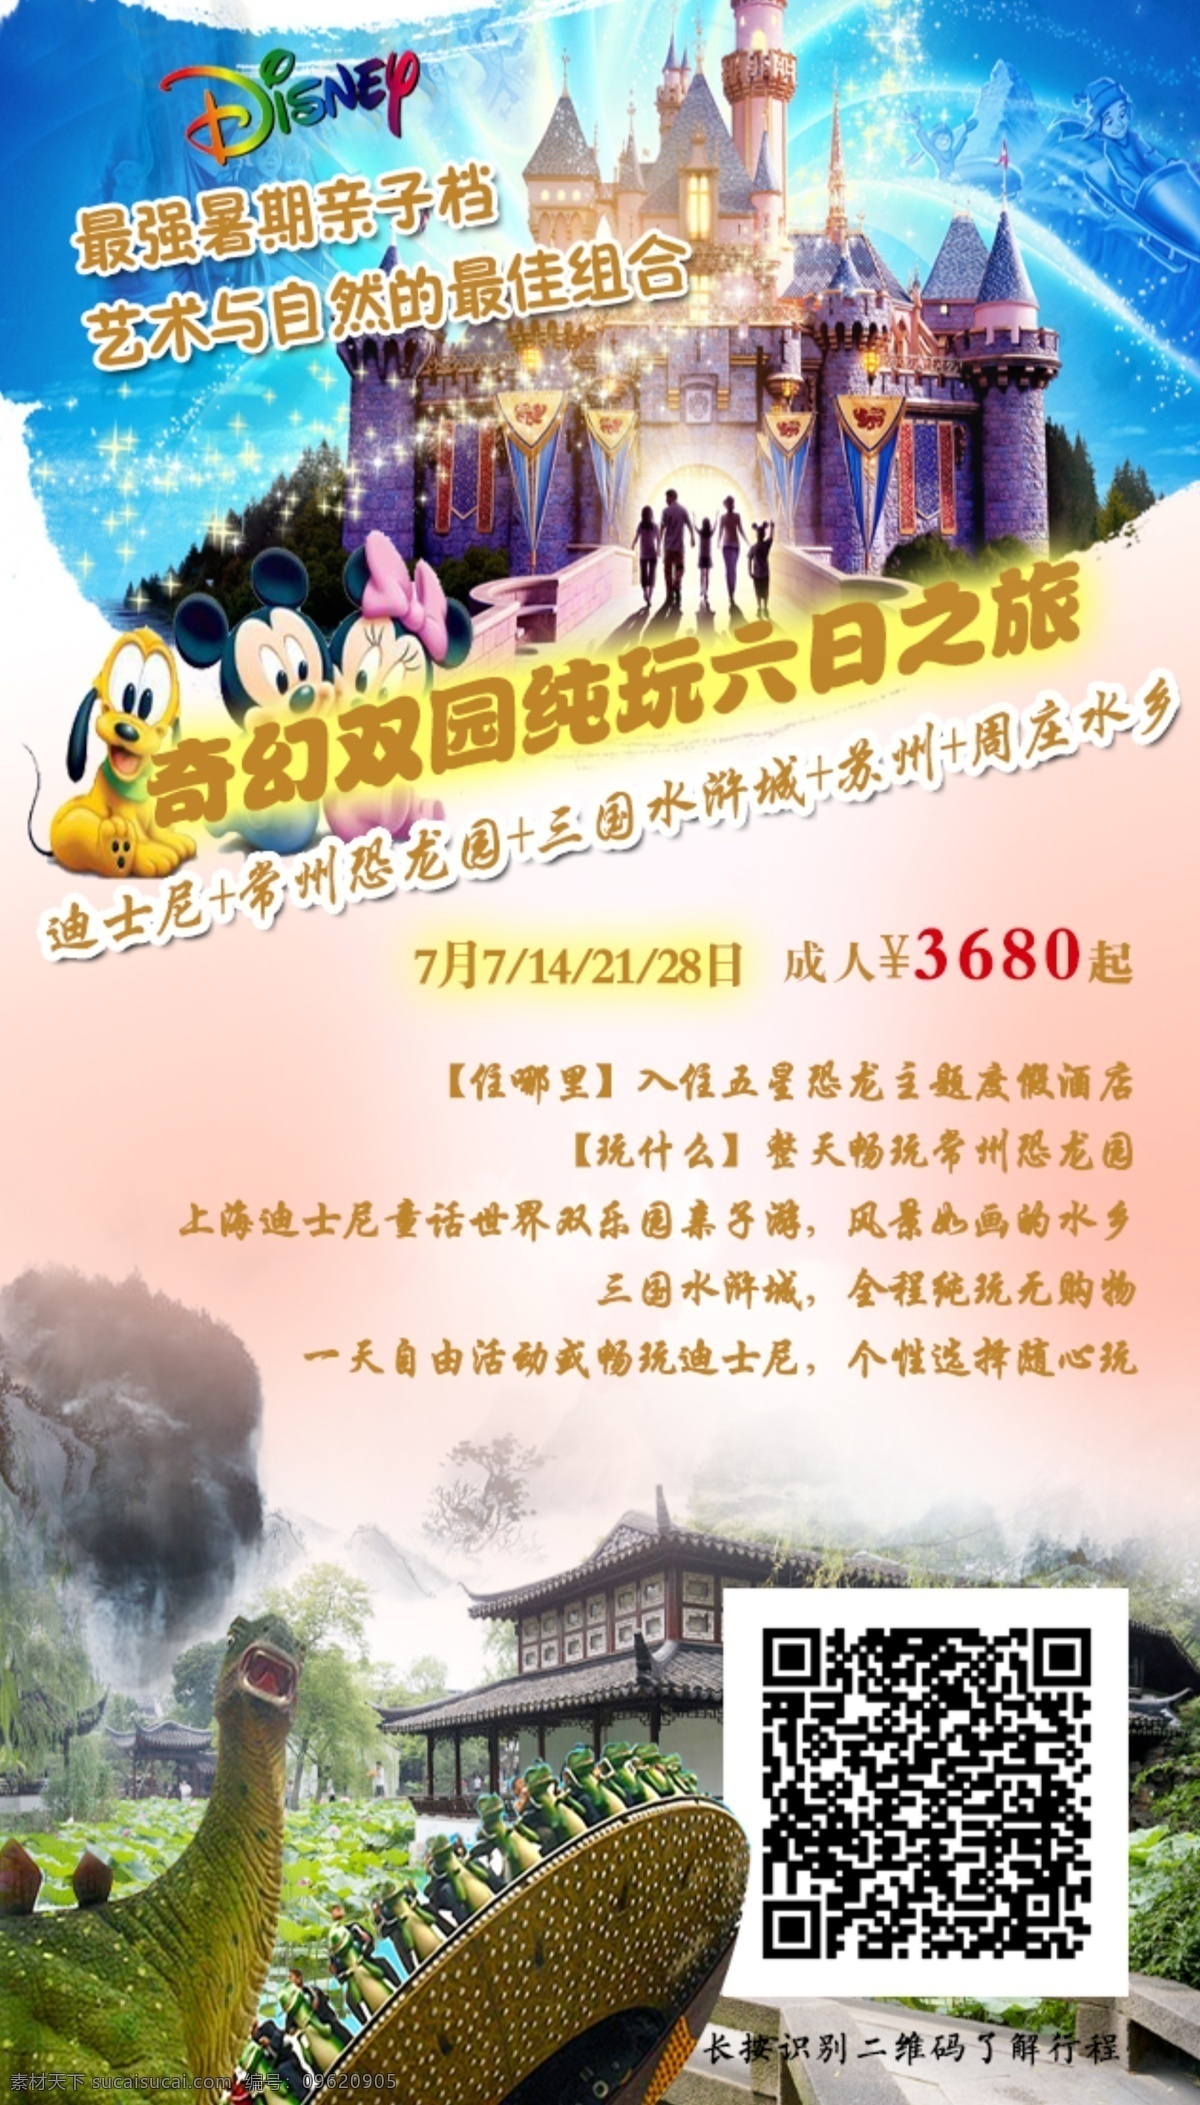 华东 五 市 亲子 游 旅游 上海迪士尼 暑期 亲子游 常州恐龙园 白色